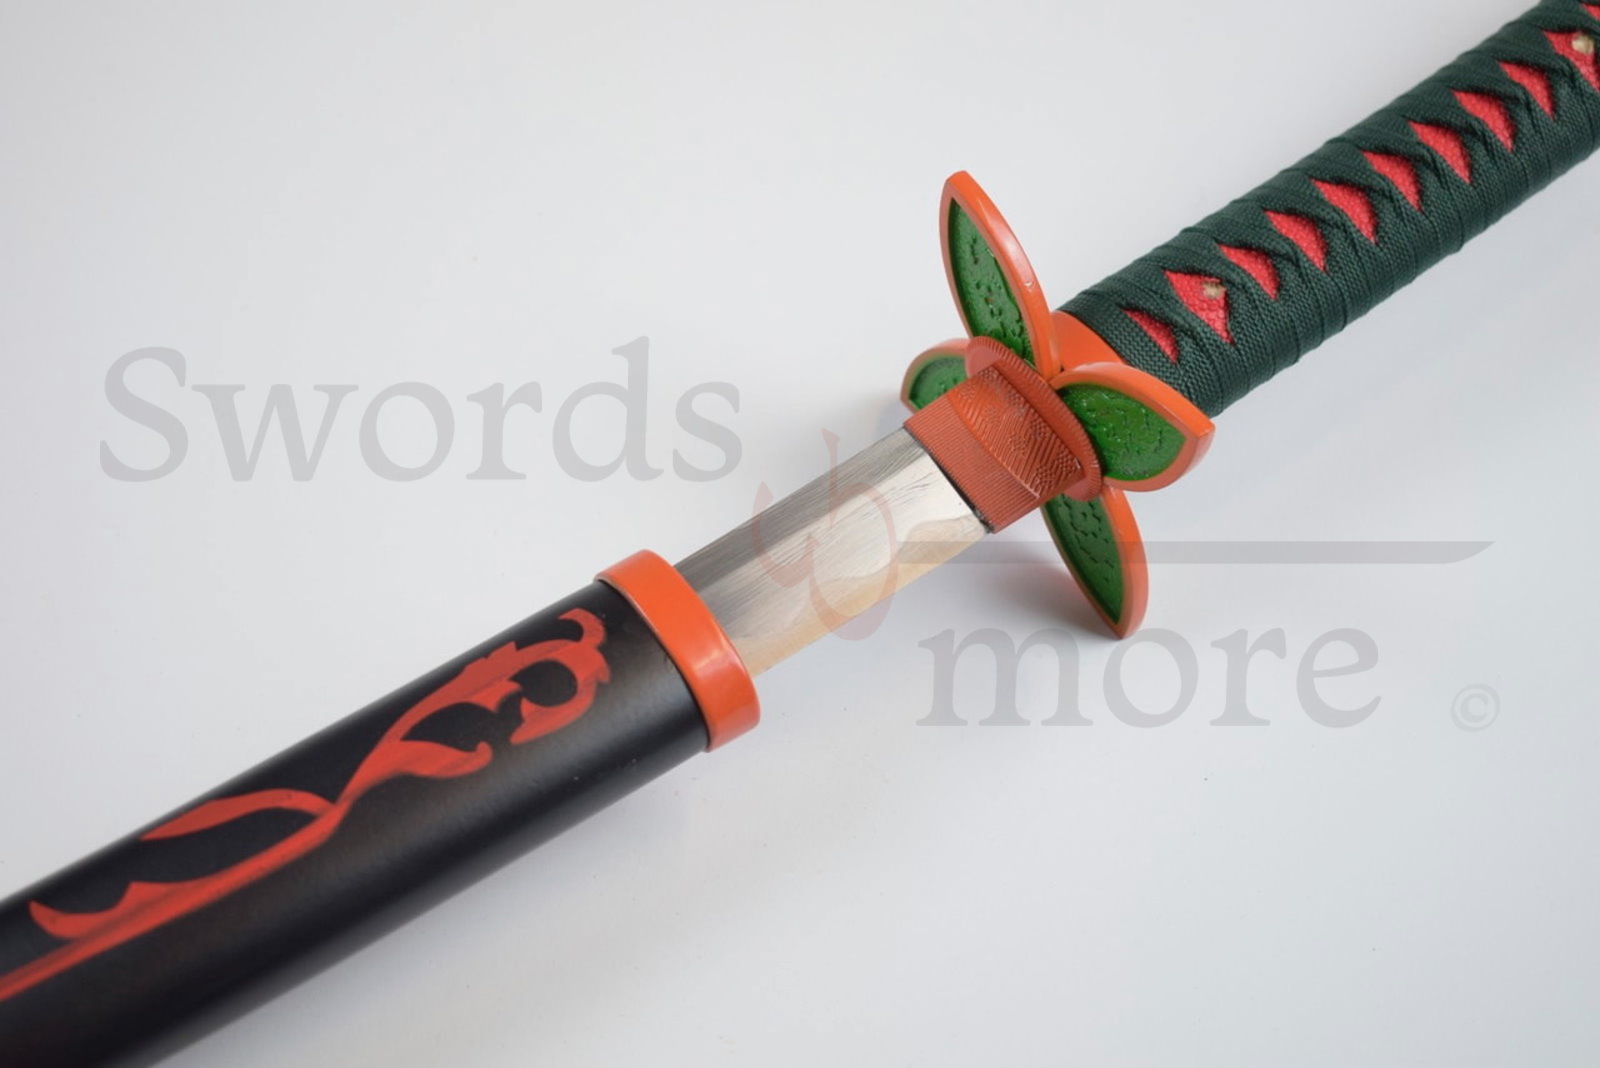 Demon Slayer: Kimetsu no Yaiba - Kochou Shinobu's Sword - handforged and folded, Set